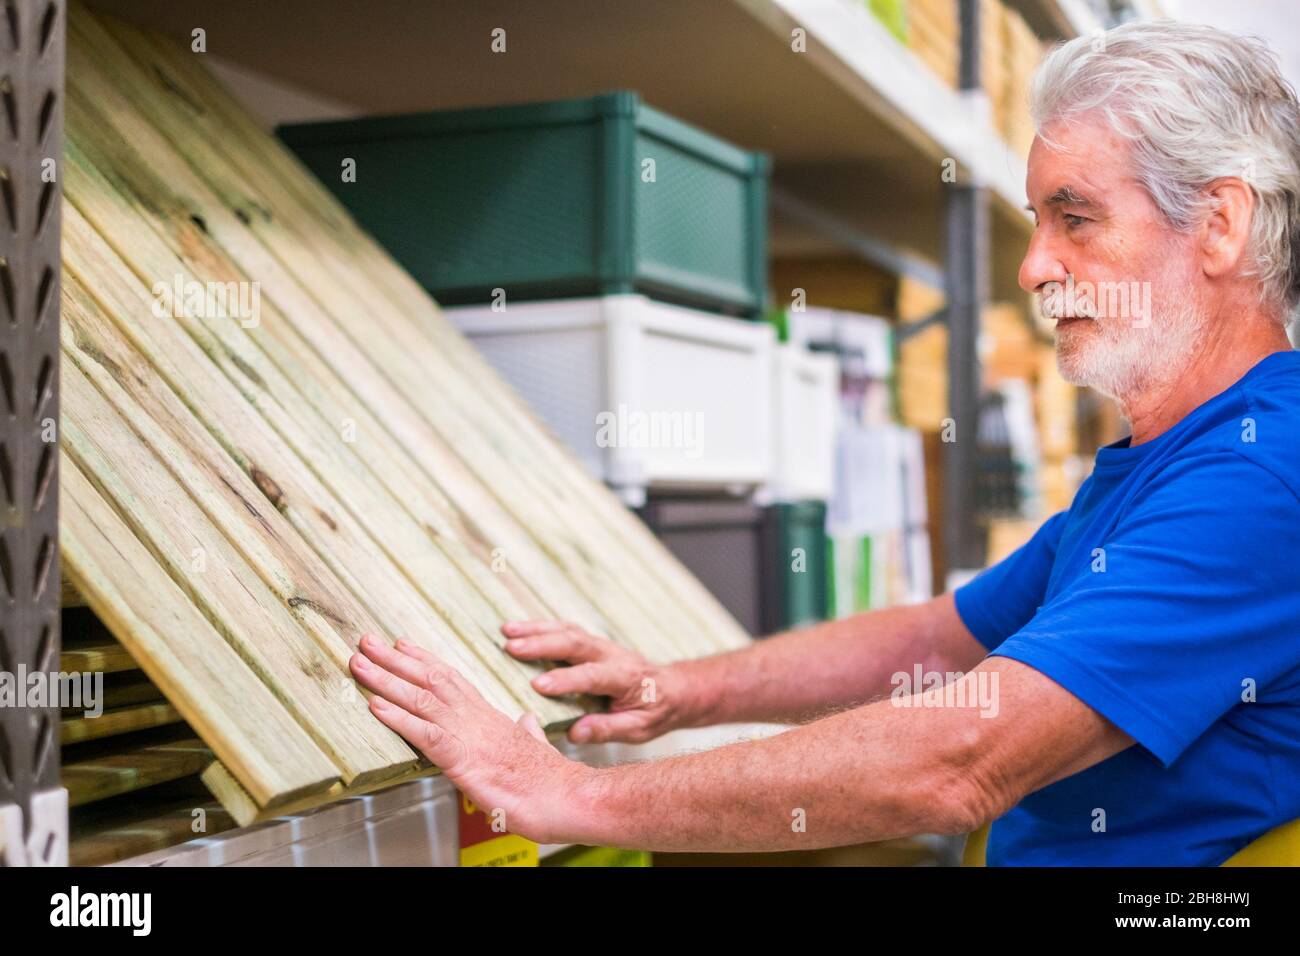 L'homme caucasien choisit des articles dans le magasin de matériel - plancher de bois comme des palettes pour construire des meubles ou le sol à la maison - concept d'affaires pour les retraités aiment faire des activités Banque D'Images